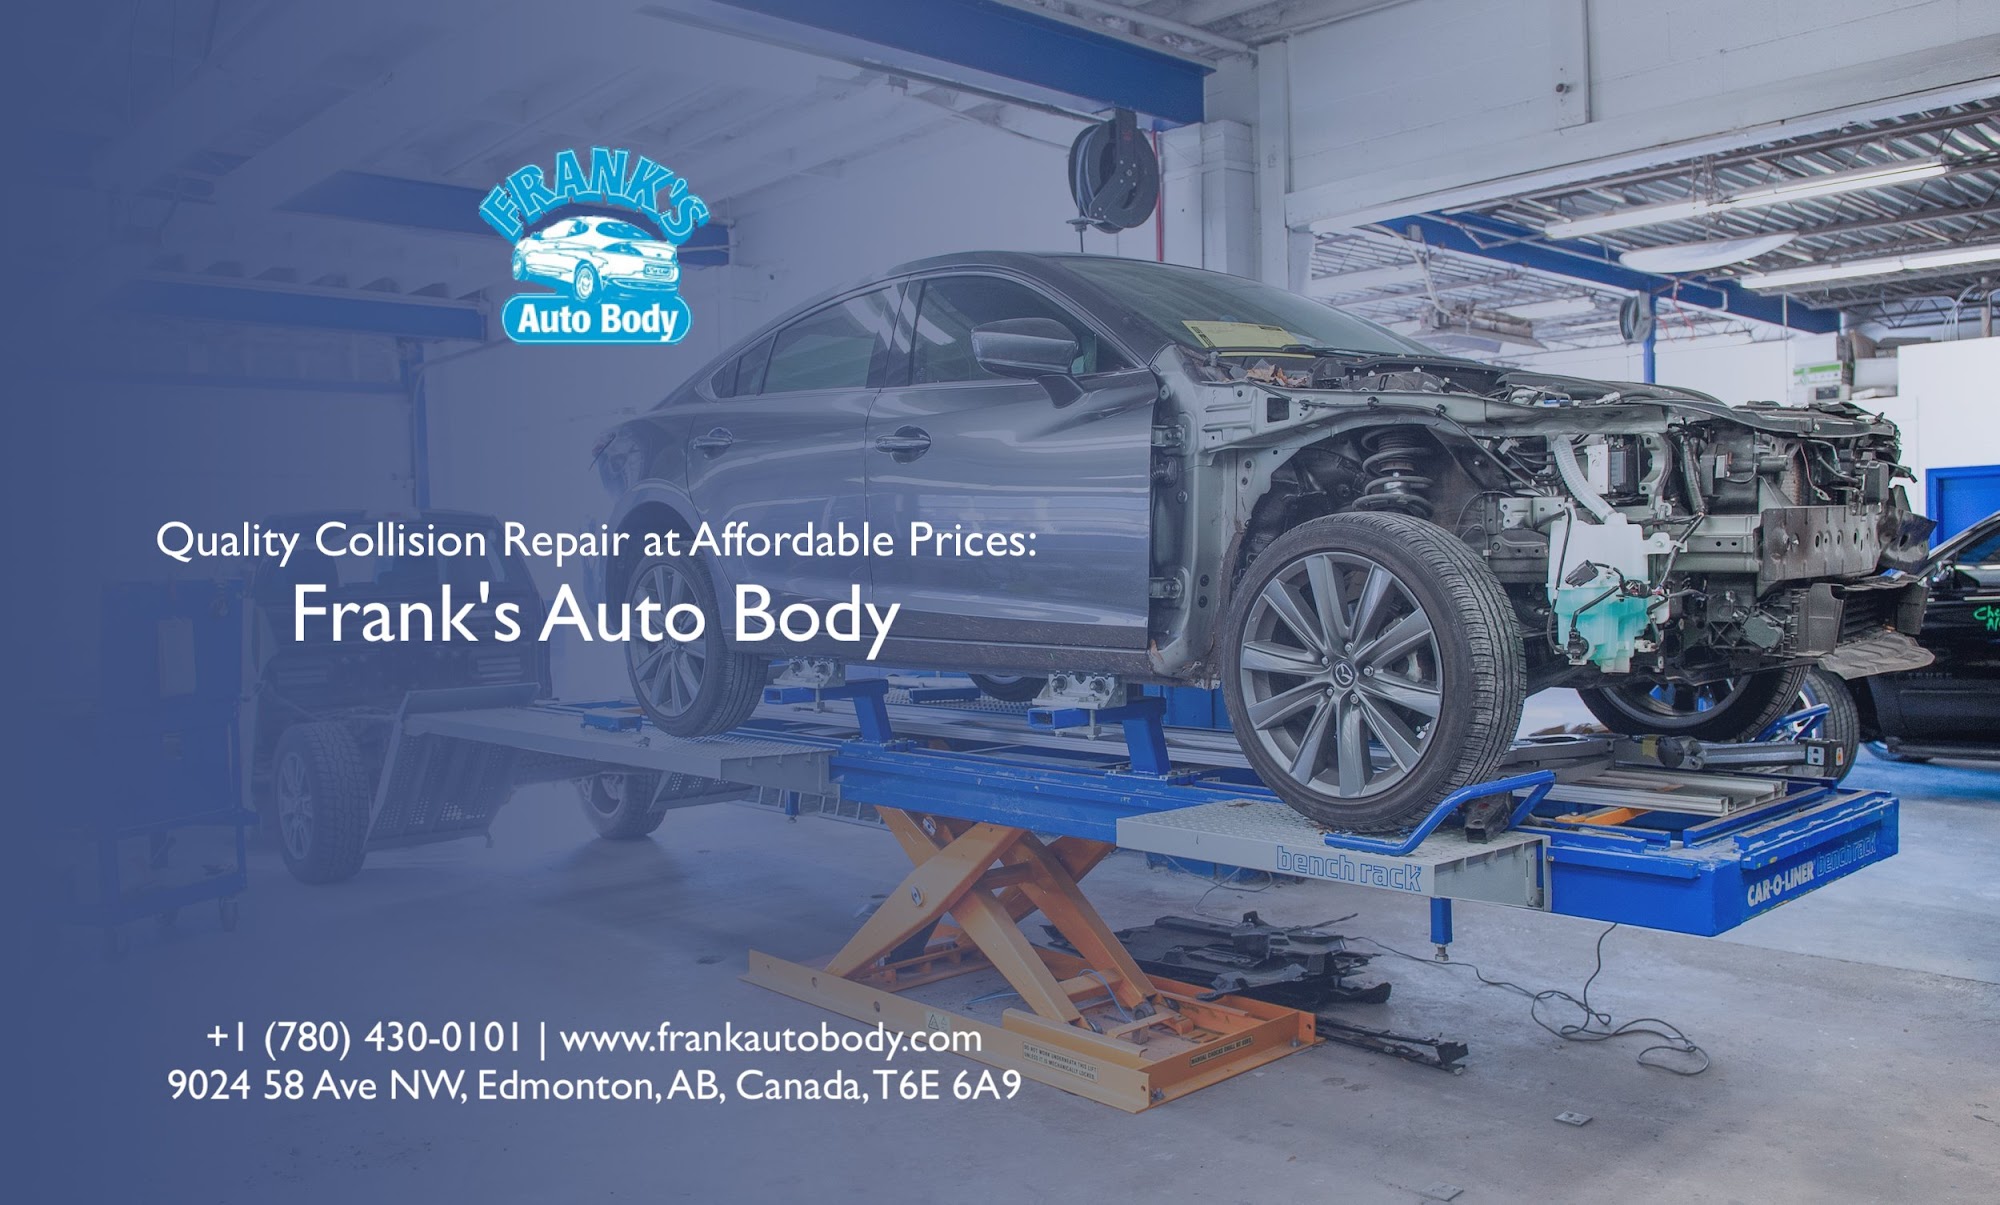 Frank's Auto Body - Best Auto Body Repair Shop in Edmonton | Accidental or Collision Repair | Rust Repair | Car Paint